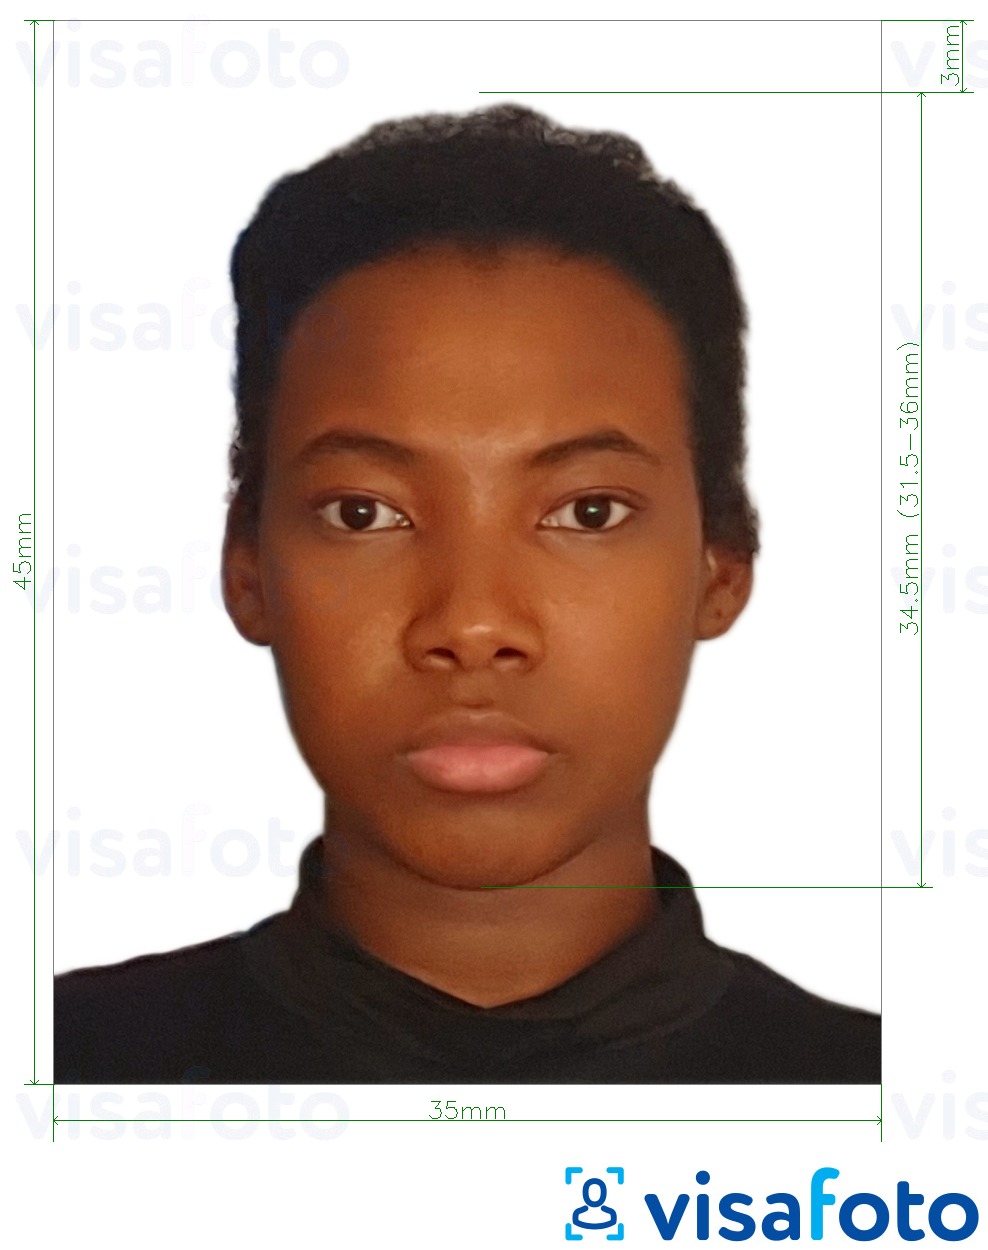 نمونه ی یک عکس برای پاسپورت گویان 45x35 میلی متر (1.77 x 1.38 اینچ) با مشخصات دقیق